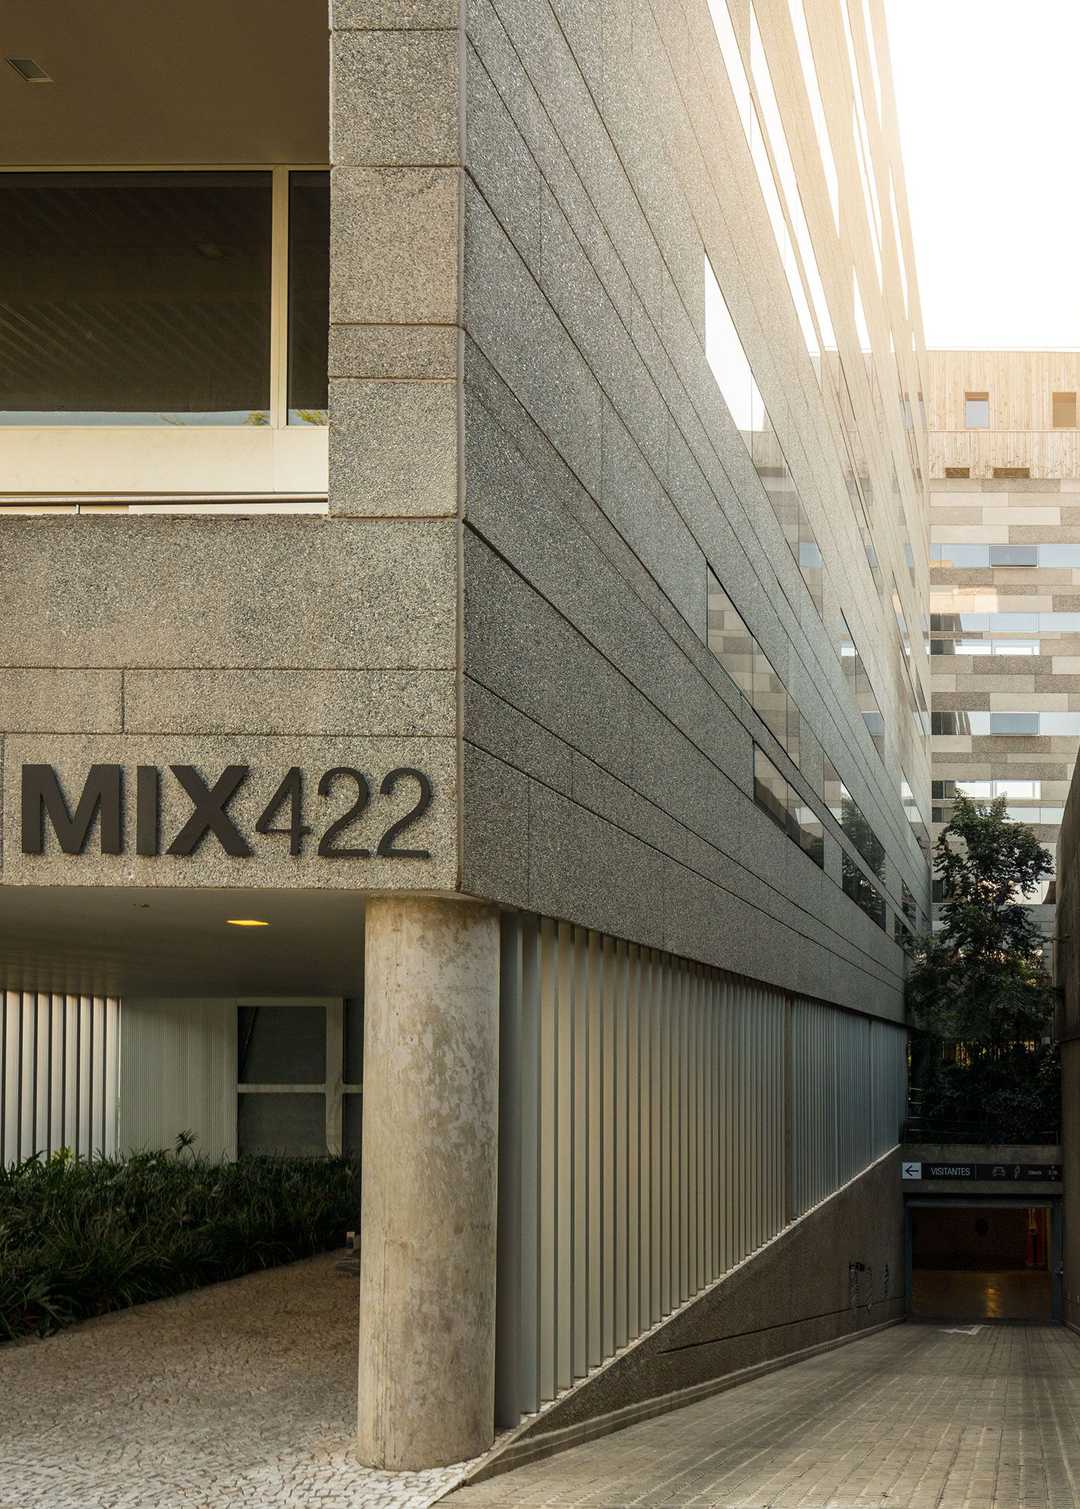 Fachada do edifício Mix 422